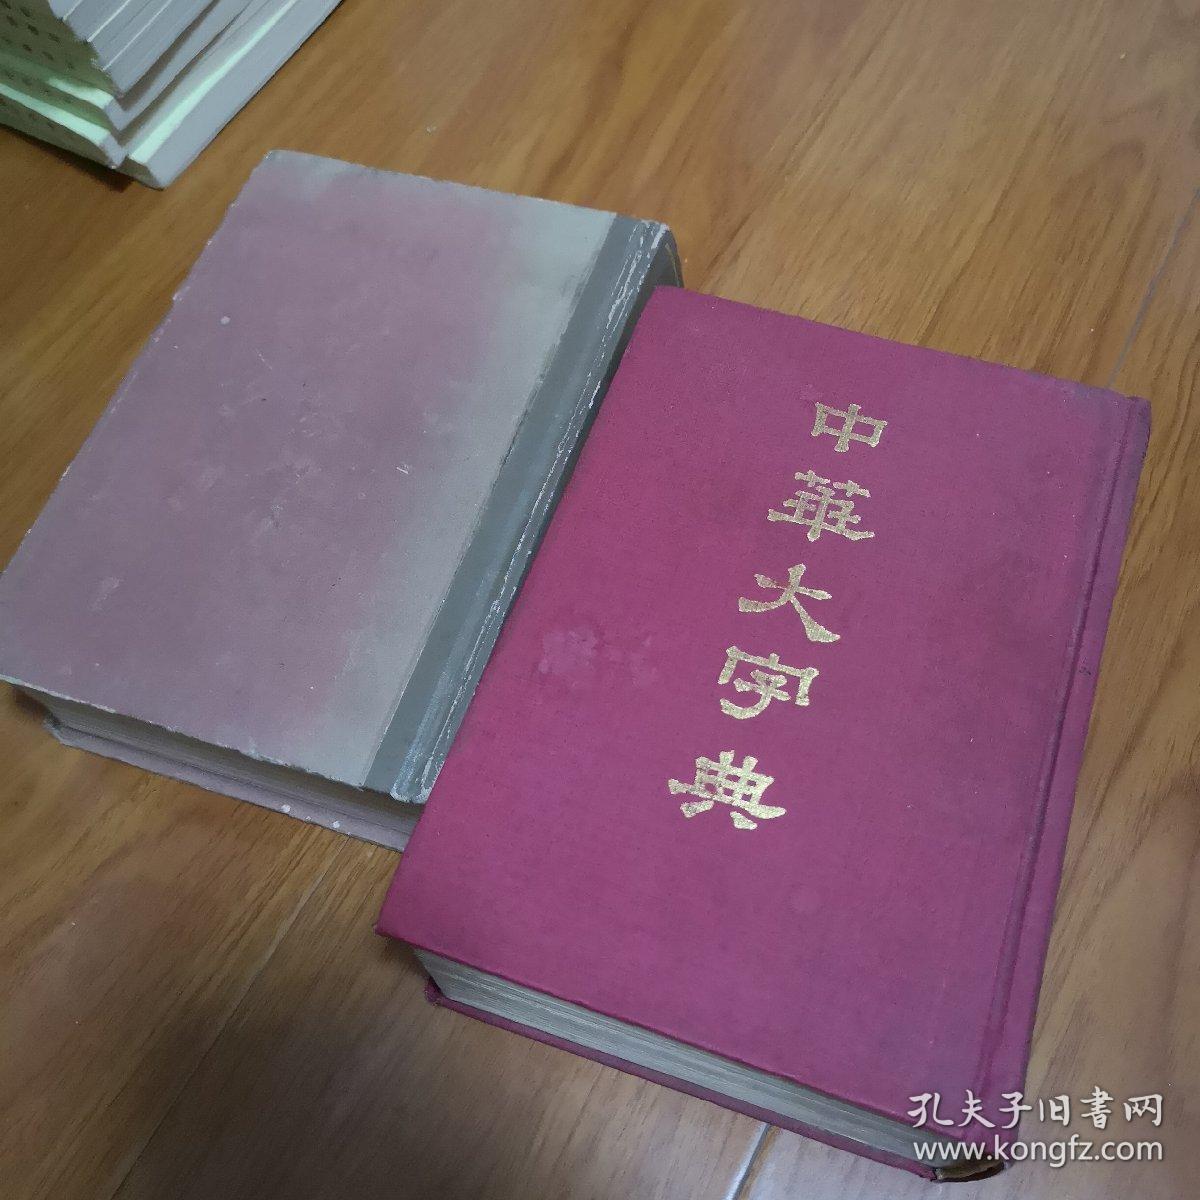 中华大字典 缩印本 上下册 1978年版